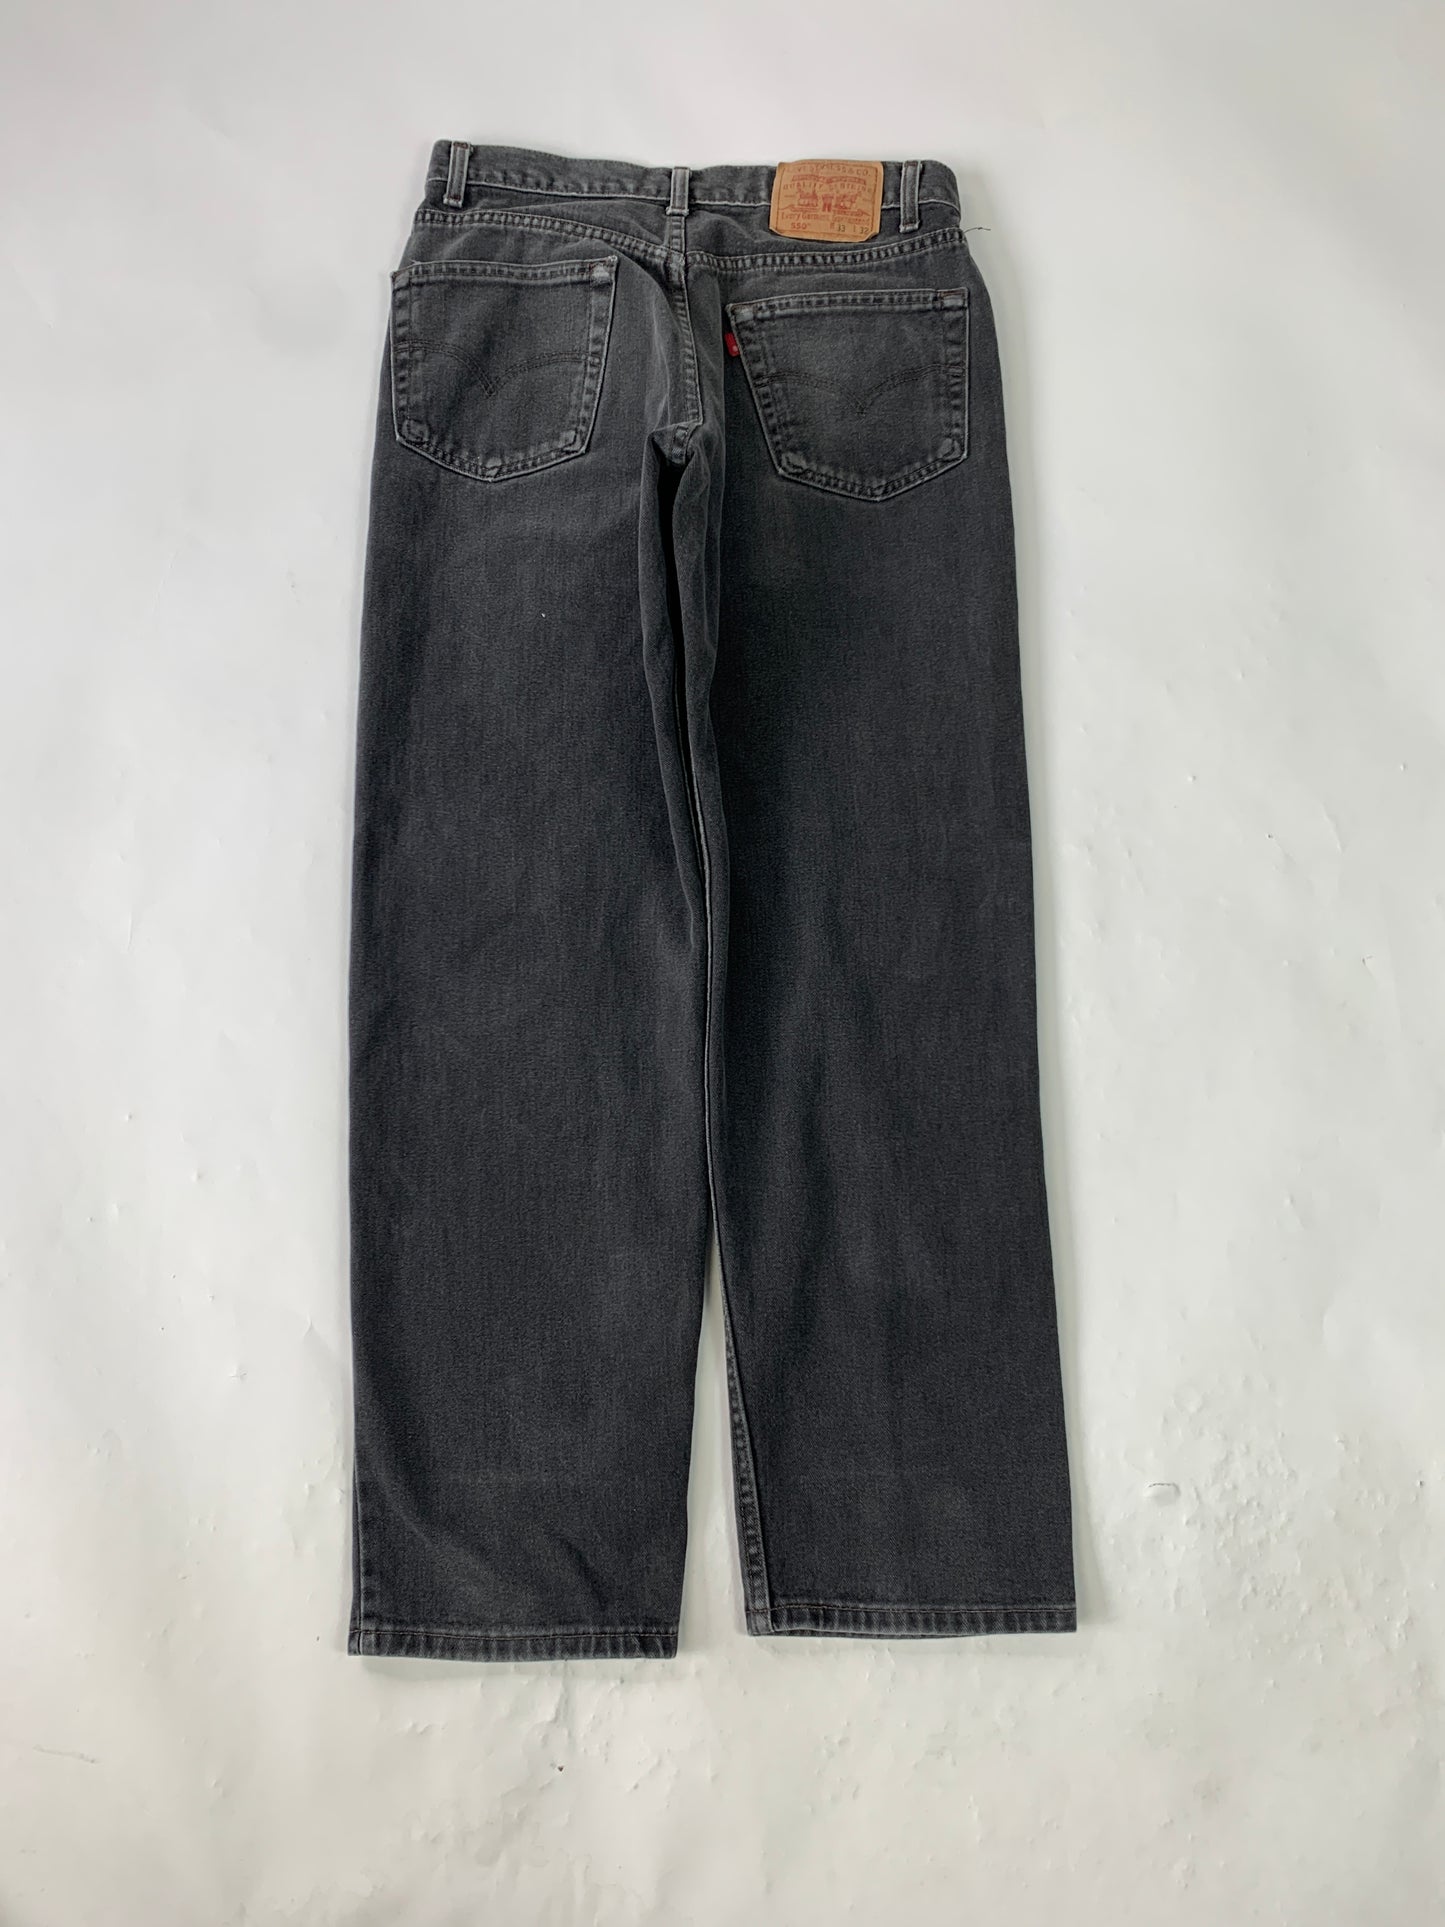 Levis Black 550 Vintage Jeans - 33 x 32